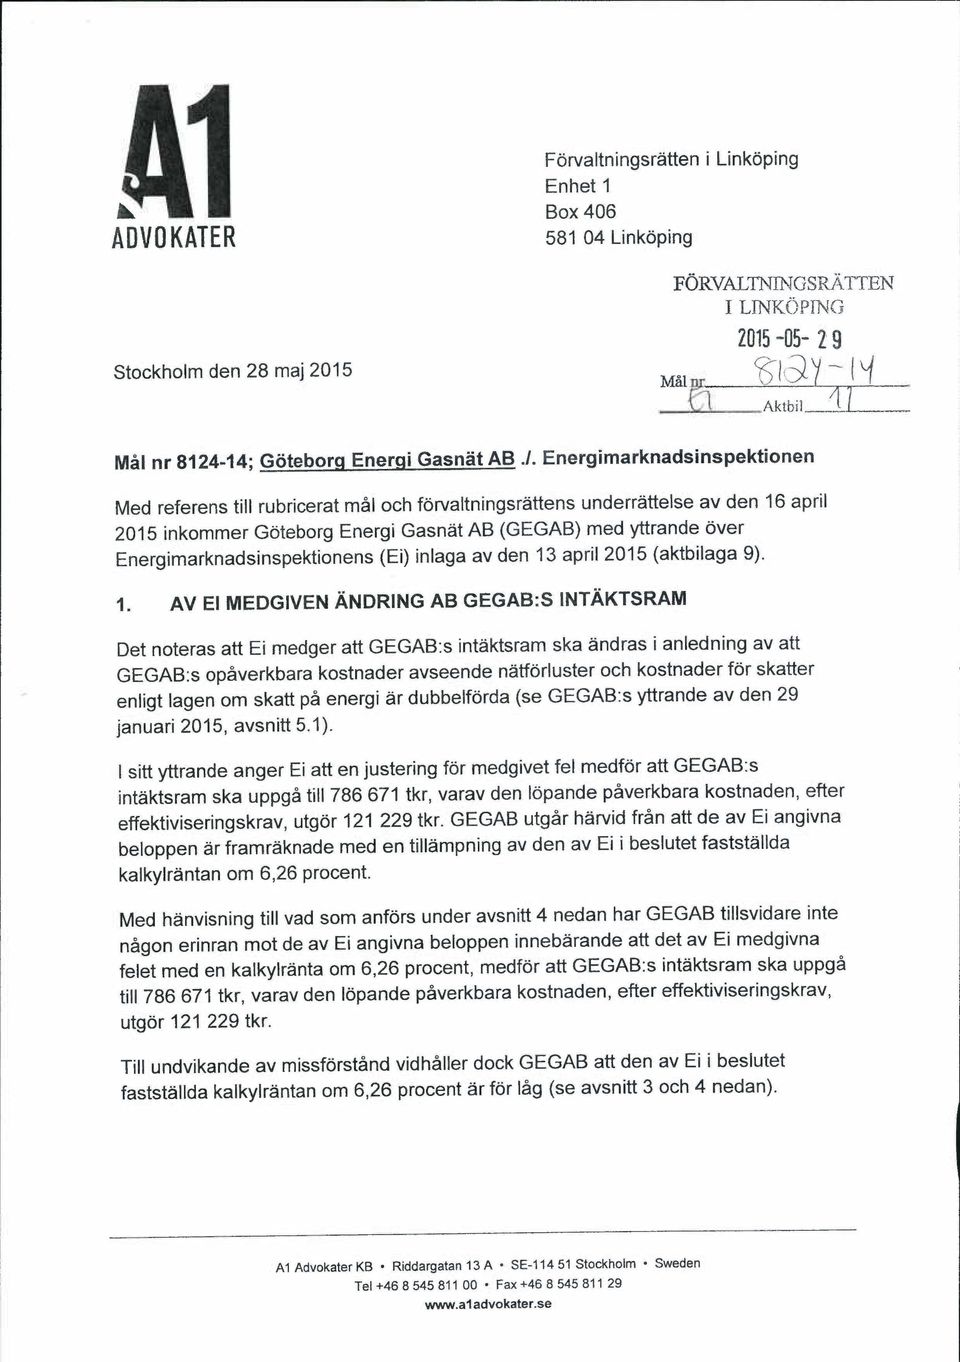 Energimarknadsinspektionen Med referens till rubricerat mal och forvaltningsrattens underrattelse av den 16 april 2015 inkommer Goteborg Energi Gasnat AB (GEGAB) med yttrande over